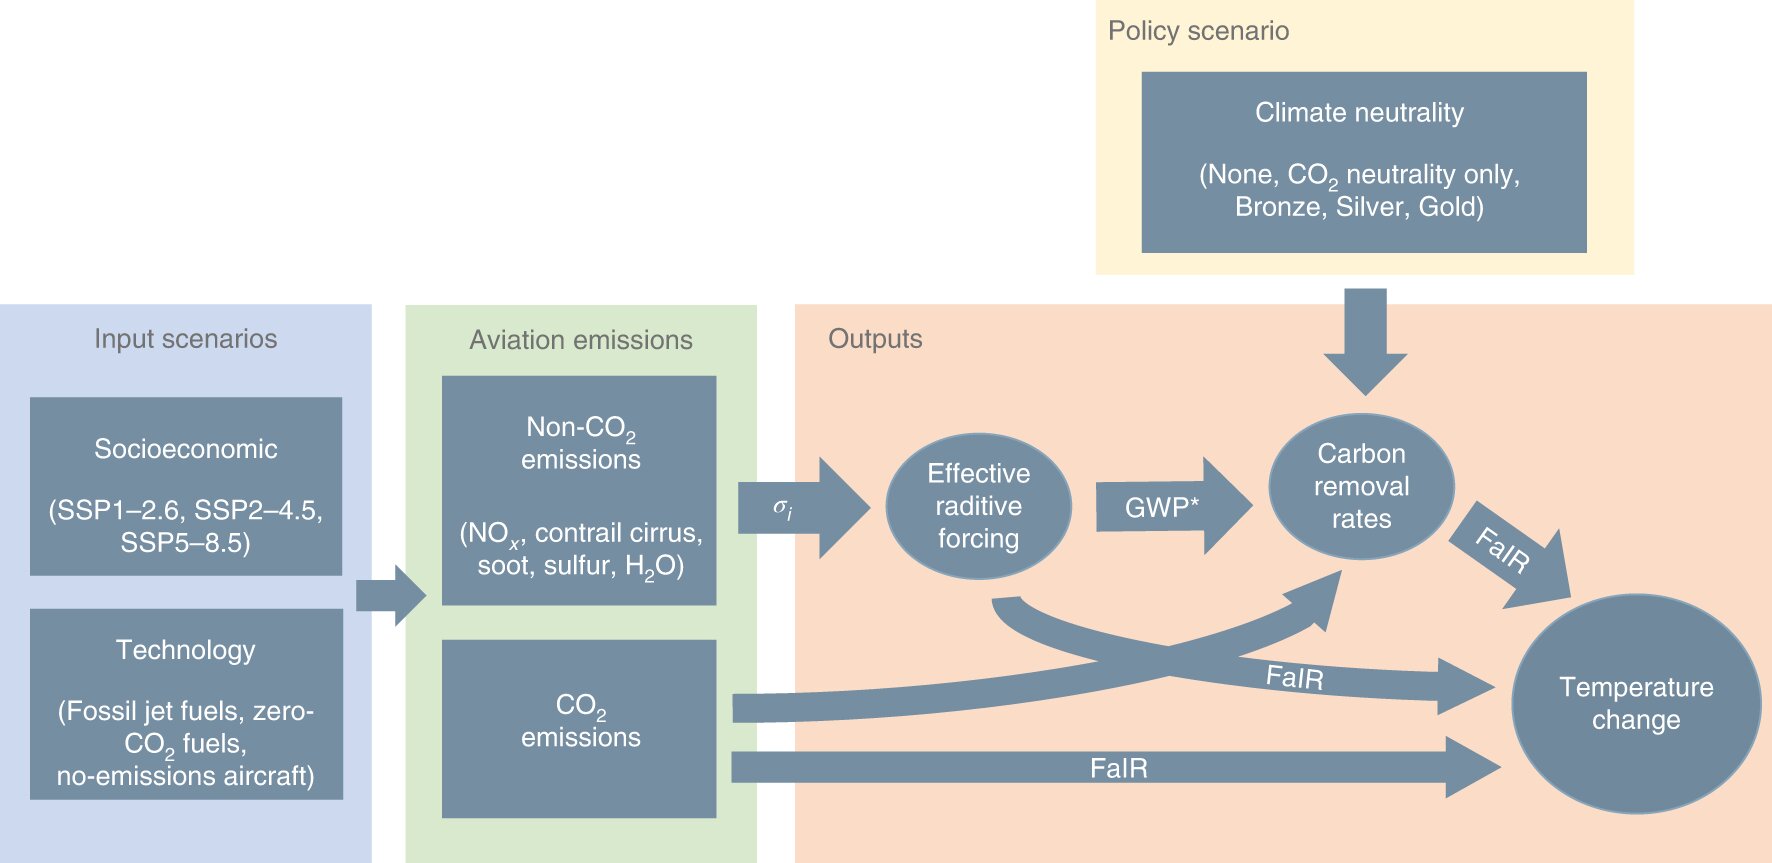 Netto-Null-CO2-Emissionen für Flugzeuge übersehen die Nicht-CO2-Klimaauswirkungen